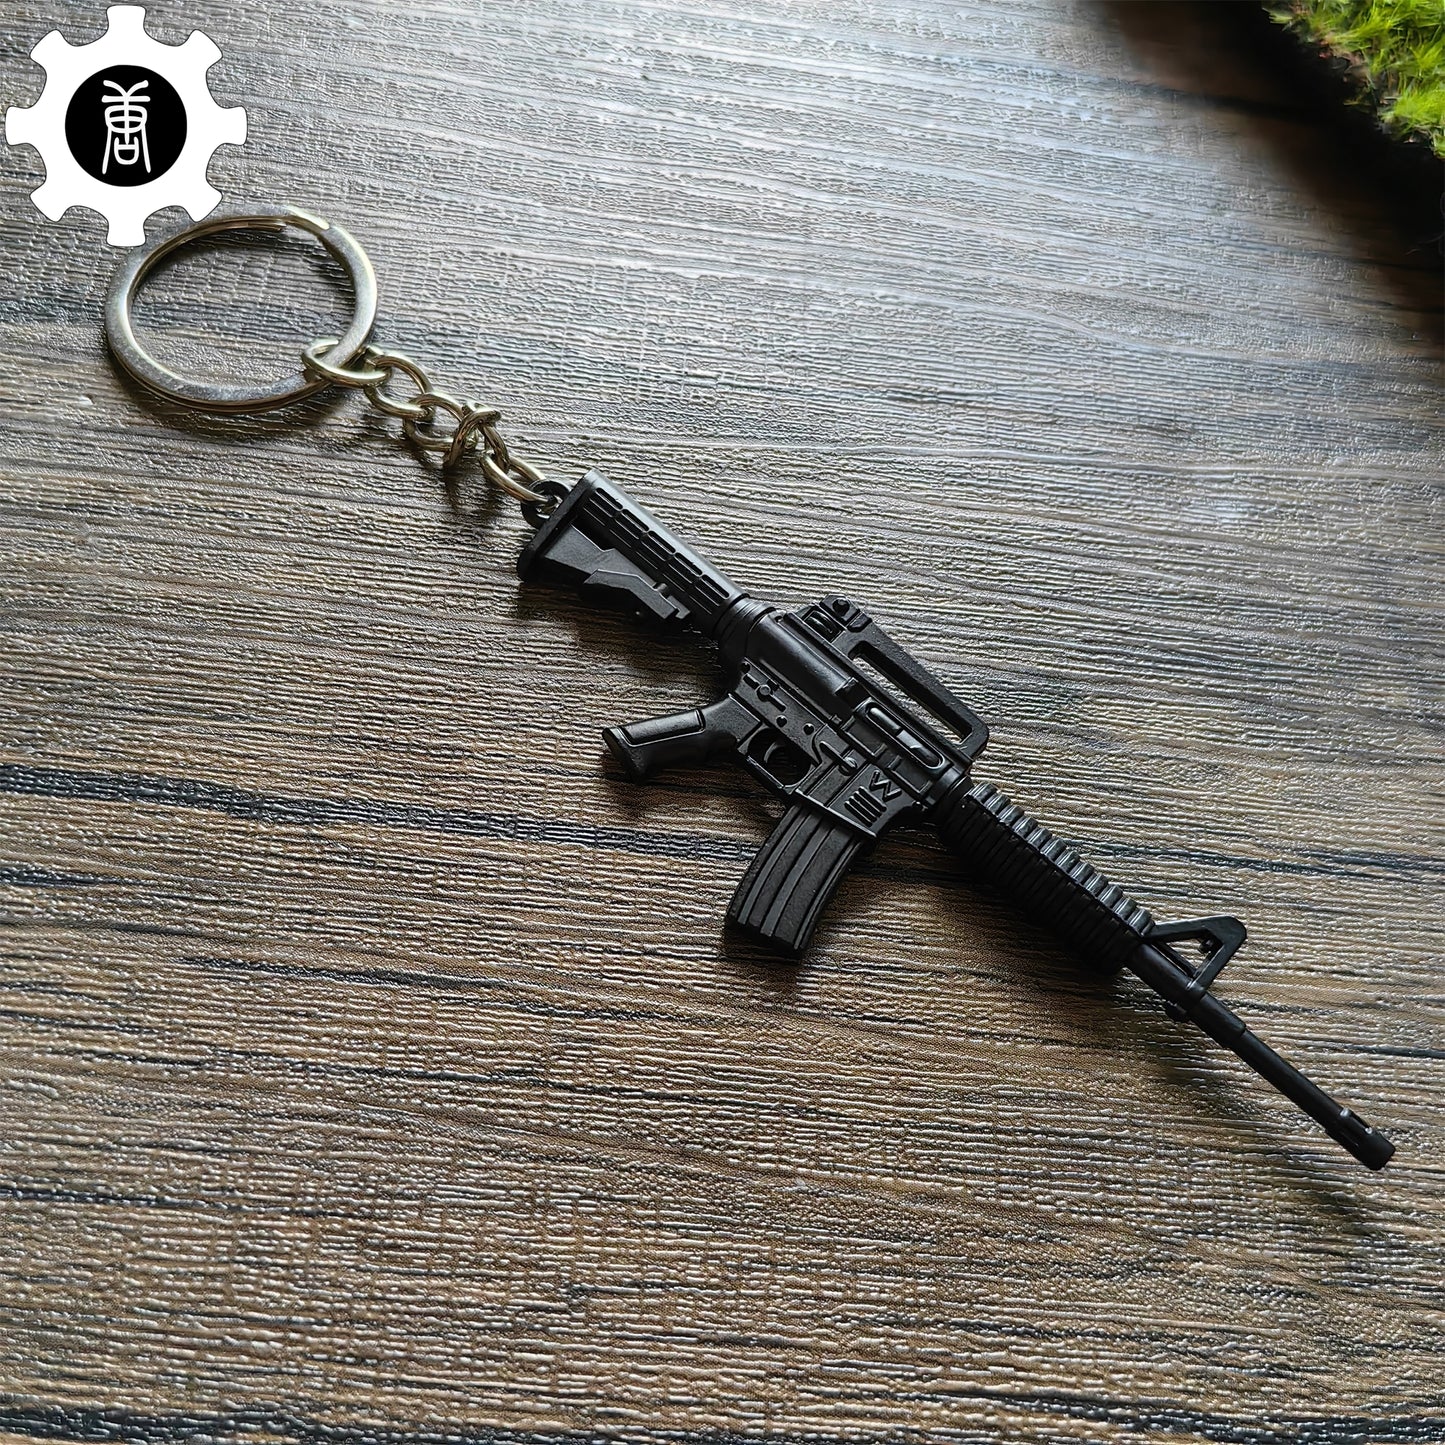 Mini M4A1 Assault Rifle Metal Keychain